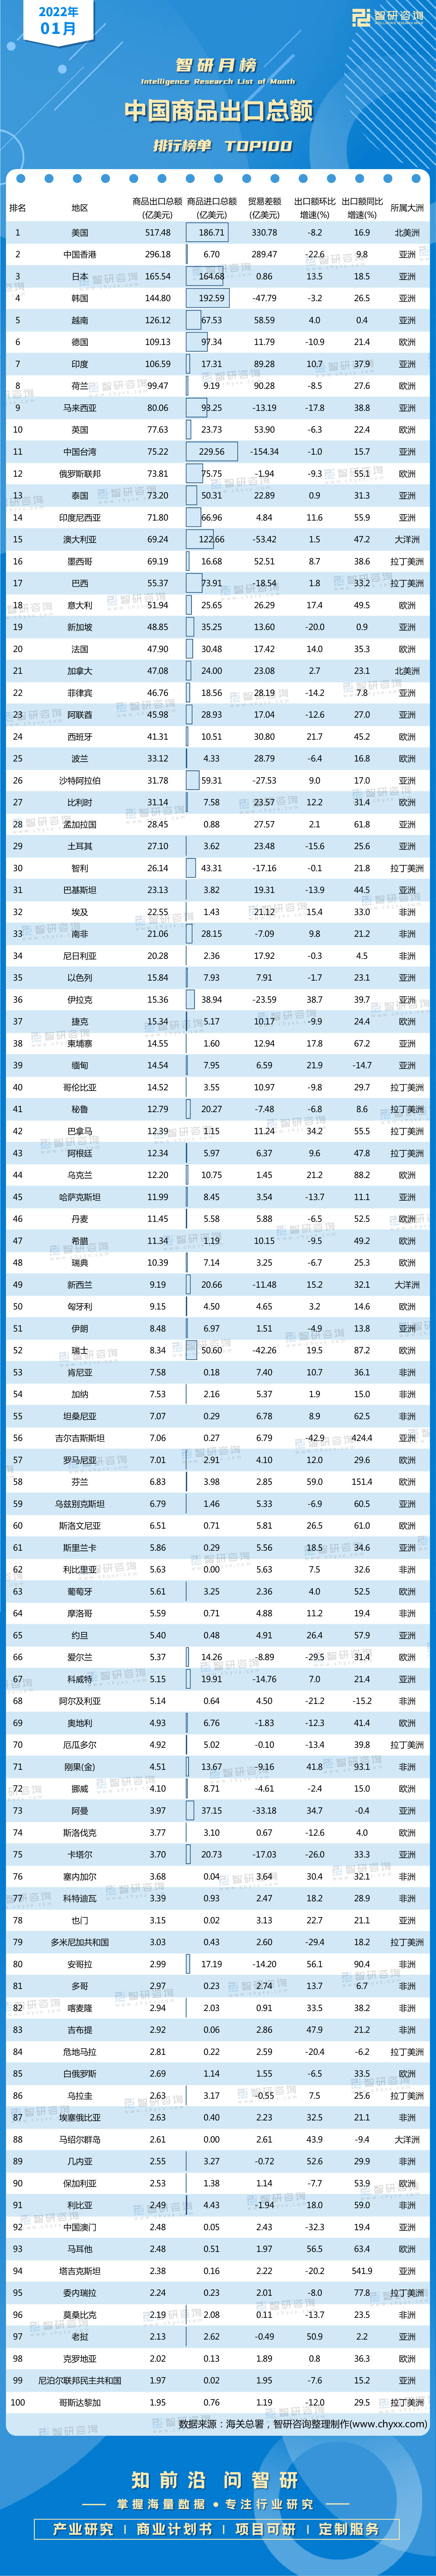 中國對外出口商品排行_外貿總額排名:中國第1、美國第2、德國第3、荷蘭第4、日本第5